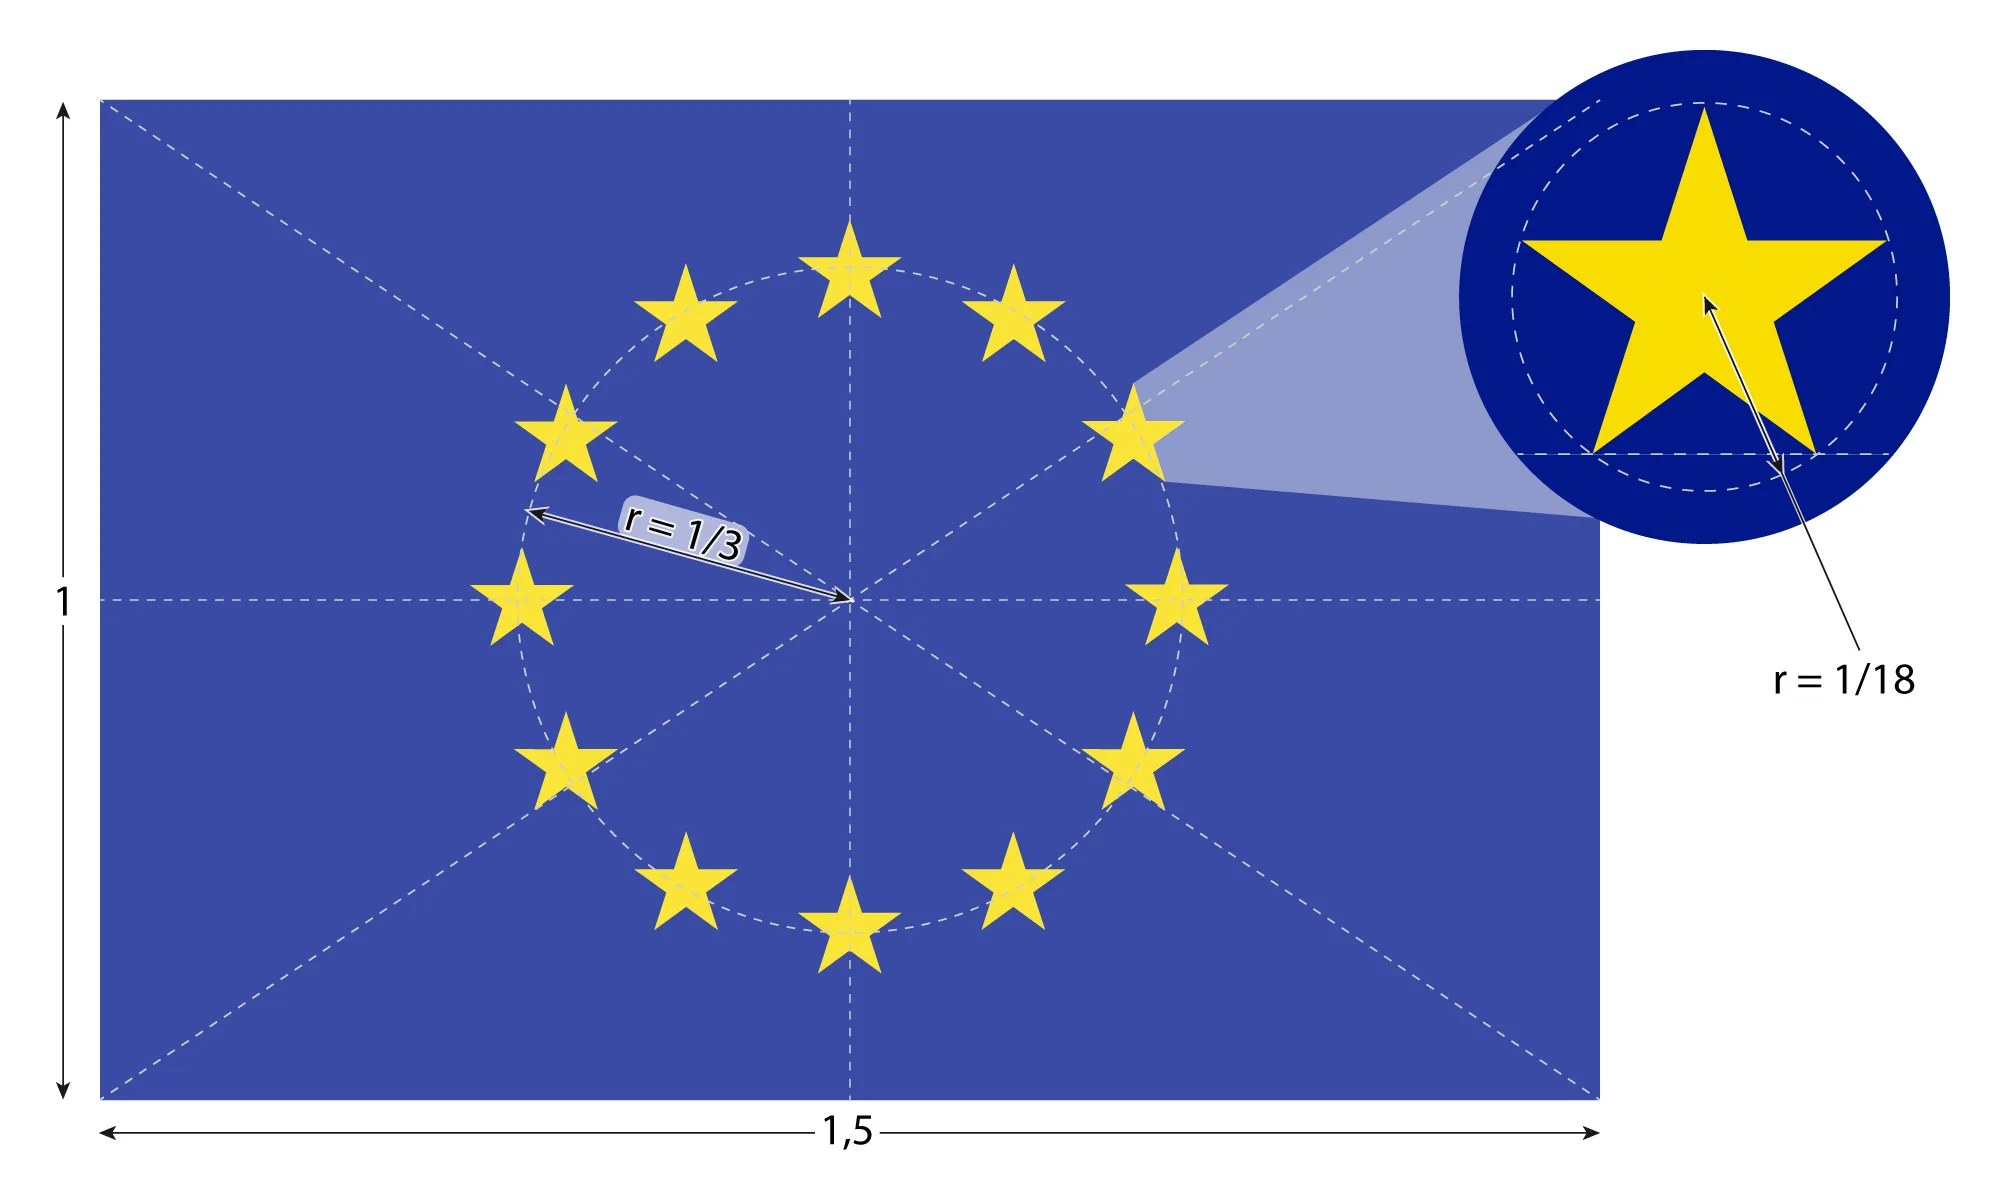 Die EU Flagge - alles zu Farben, Symbolen & Geschichte